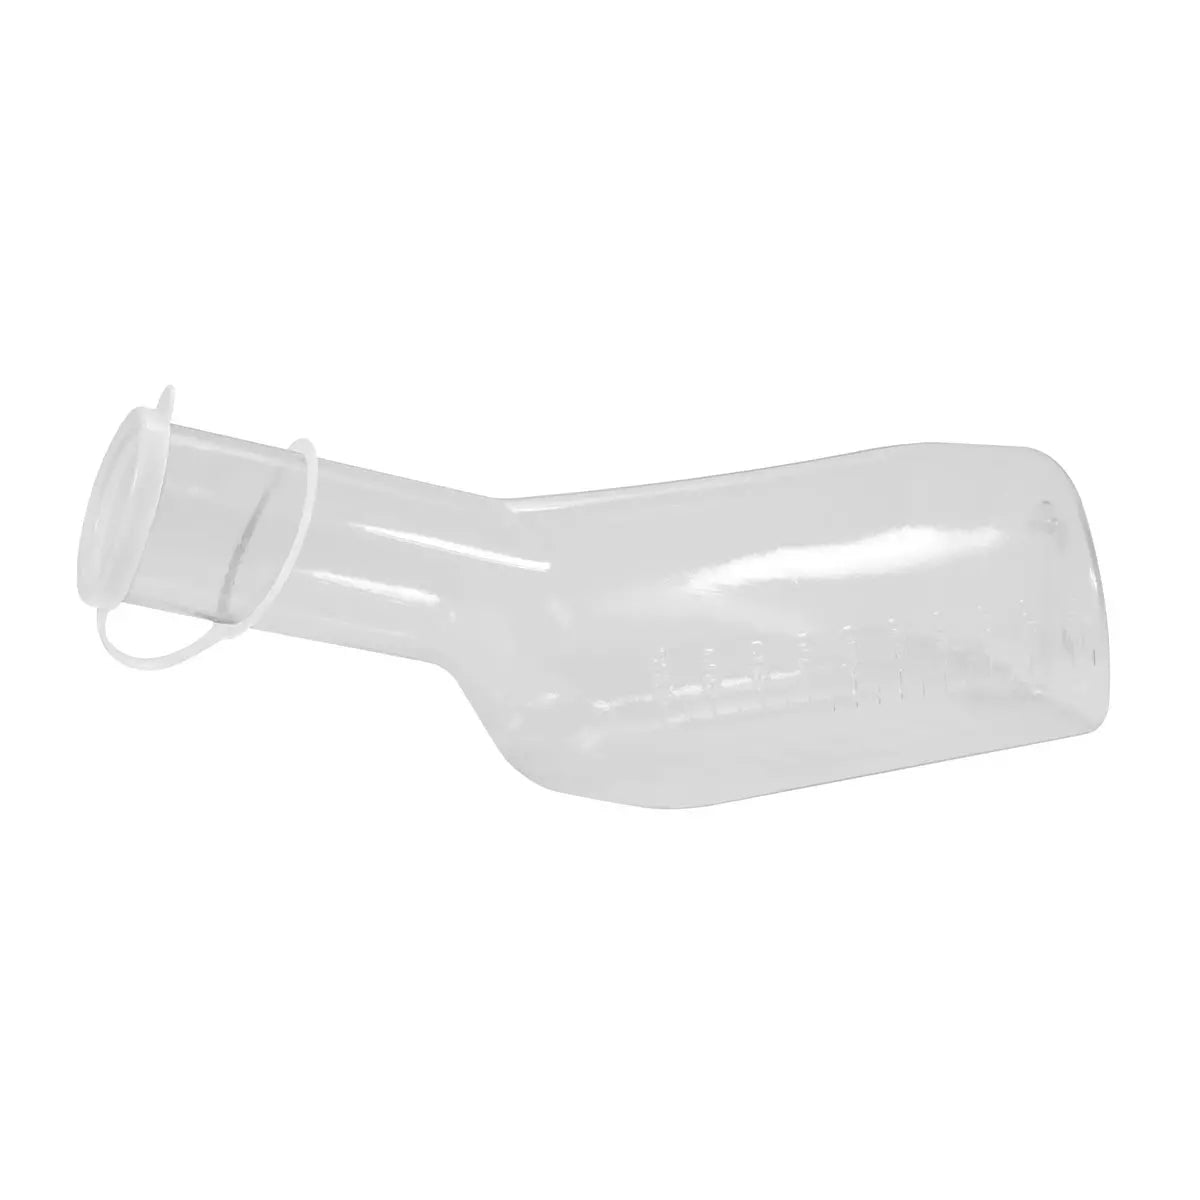 PC Urinflasche für Männer, eckig, Farbe glasklar mit weißem PP Deckel